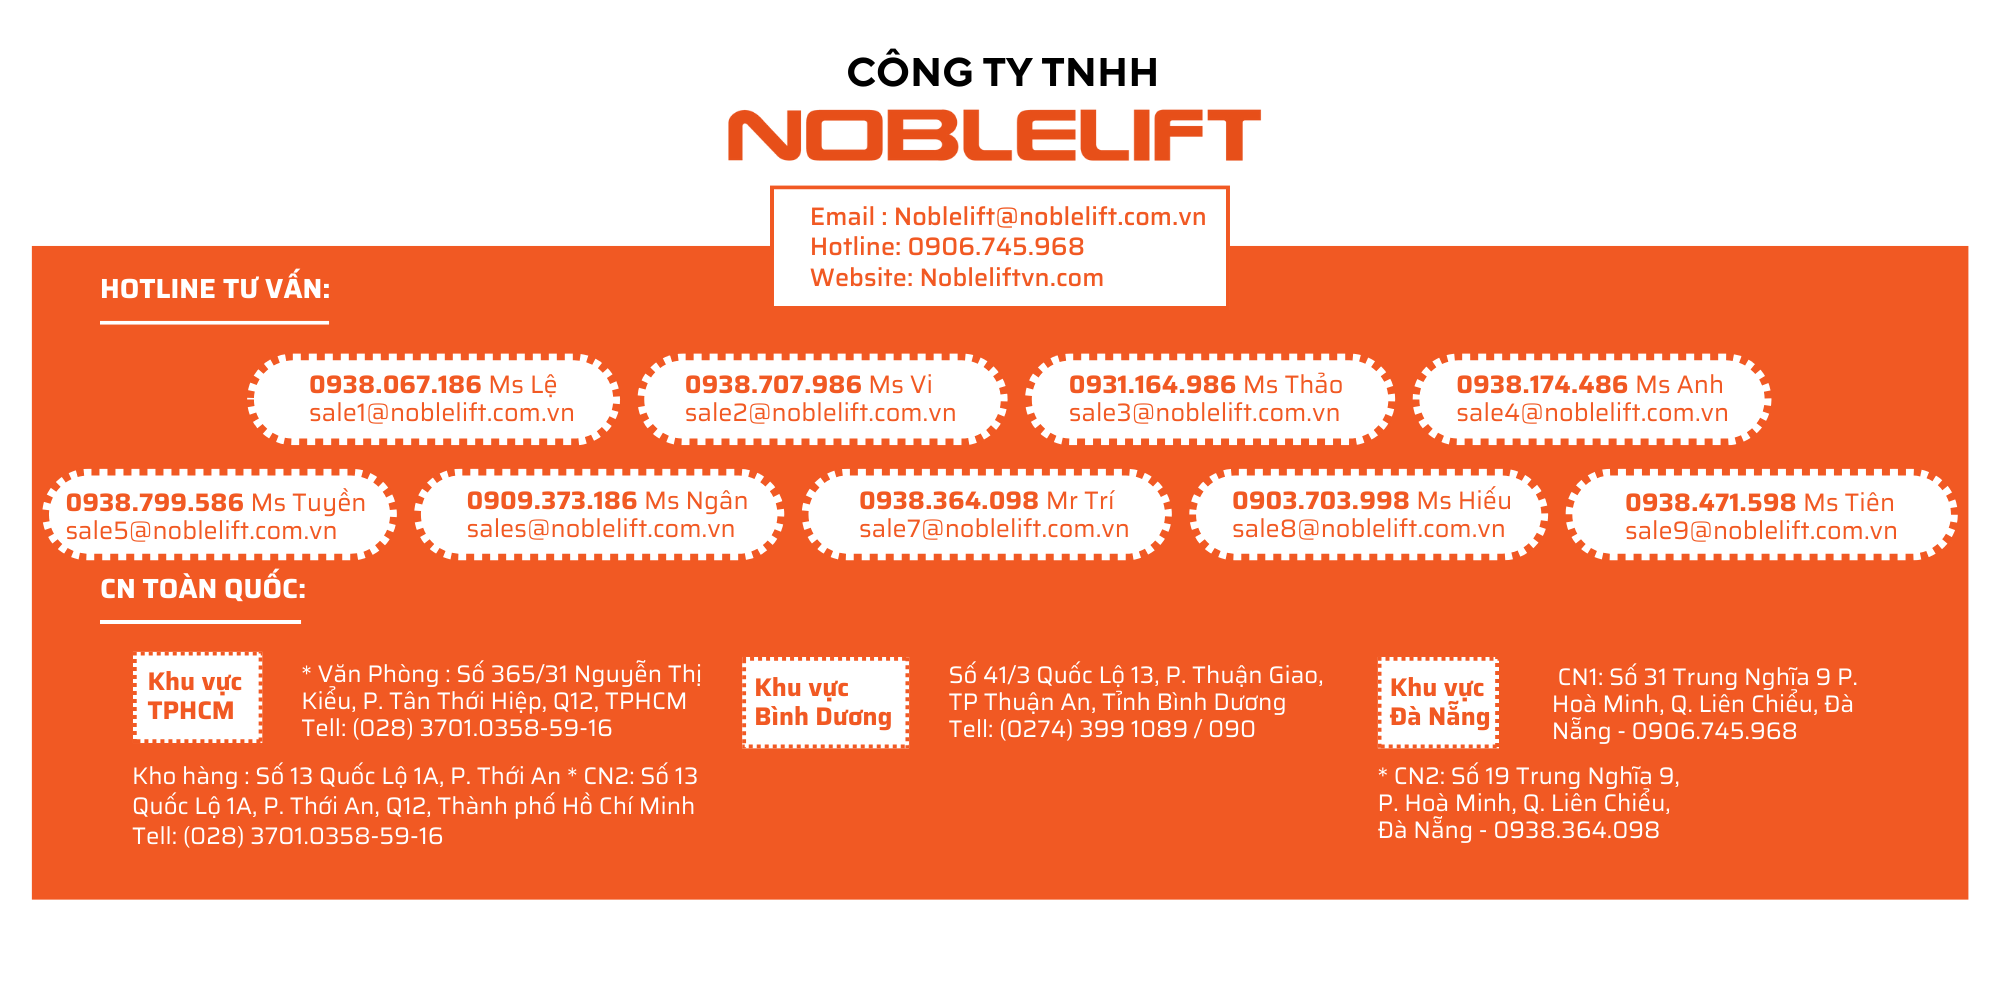 contact liên hệ Công ty Noblelift Việt Nam